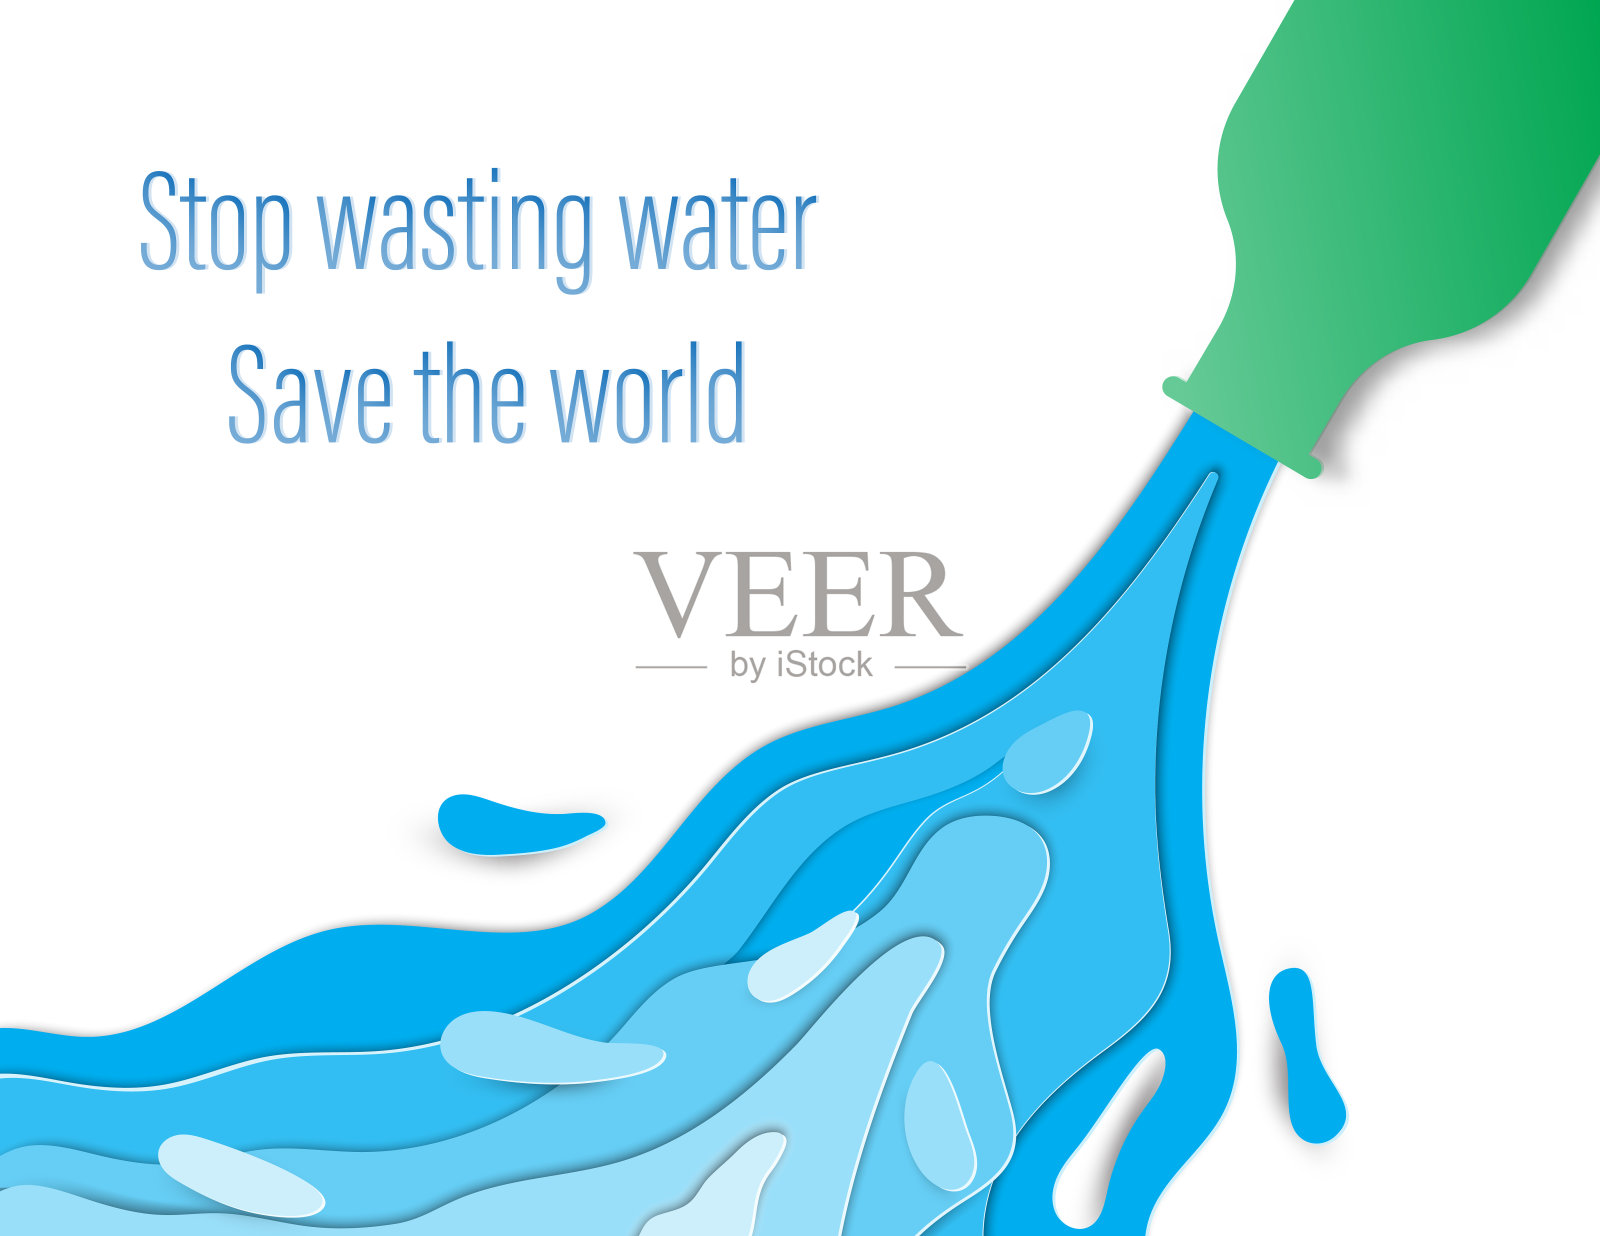 减少浪费用水的概念。水从绿色的瓶子里流出来。插画图片素材